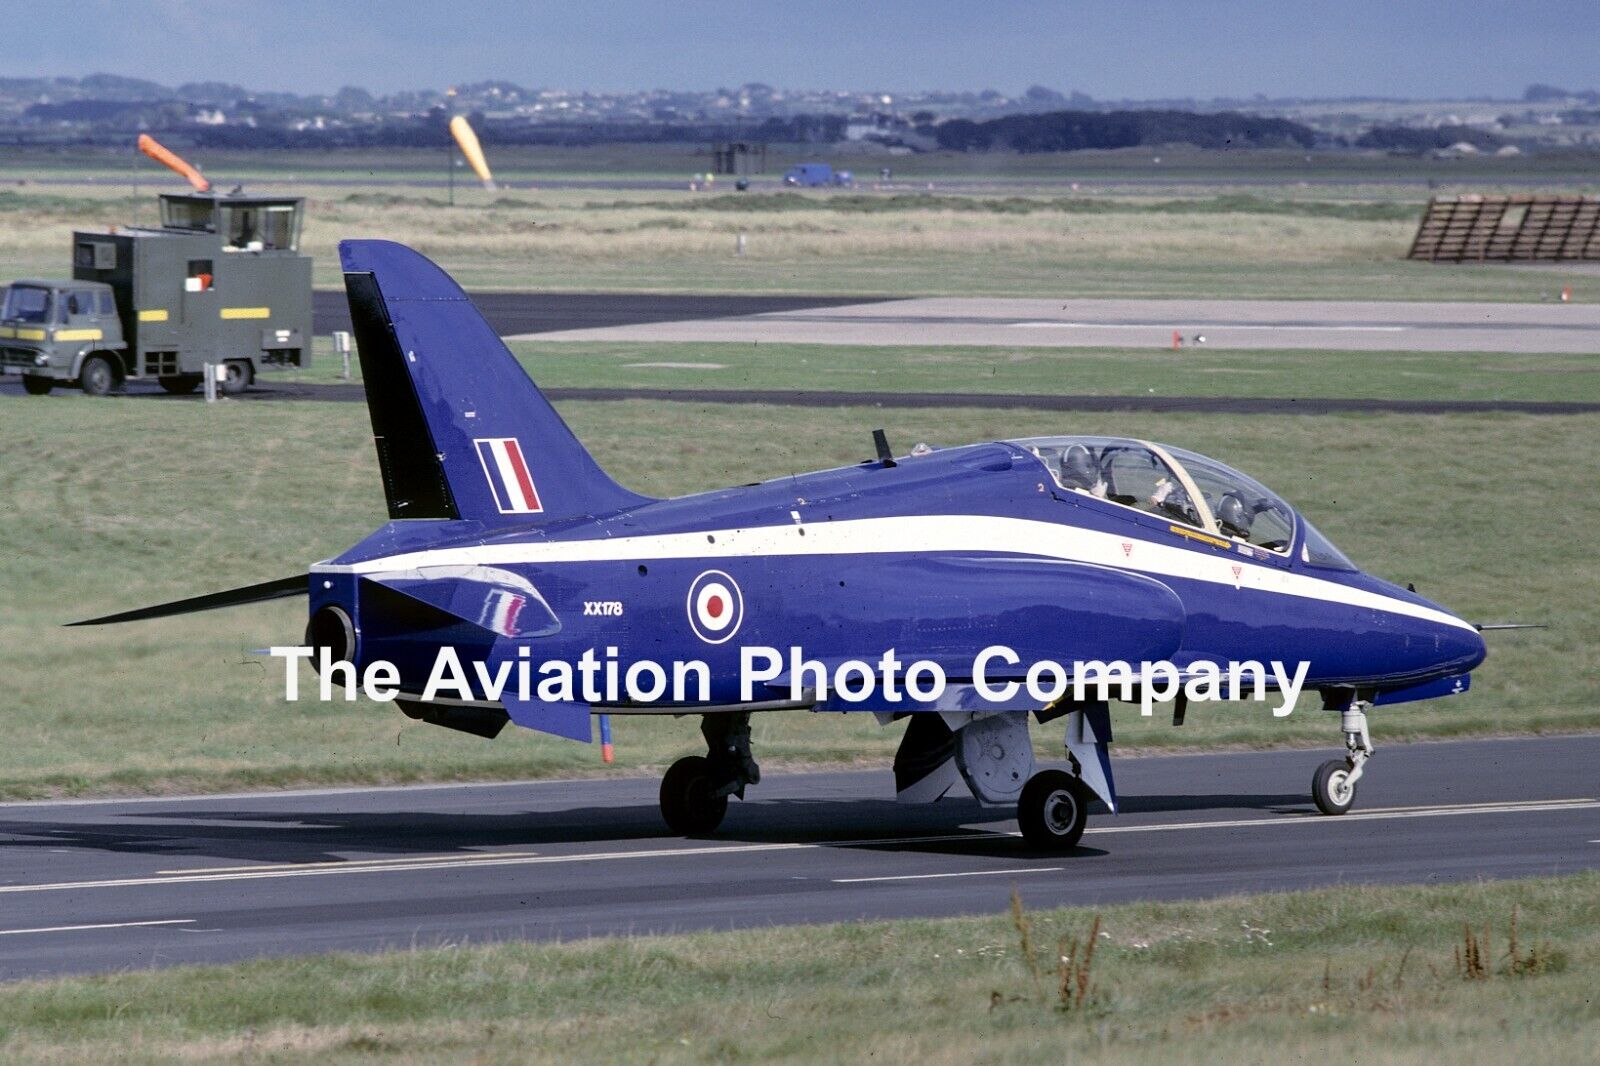 RAF 4 FTS Hawker Siddeley Hawk T.1 XX178 (1995) Photograph